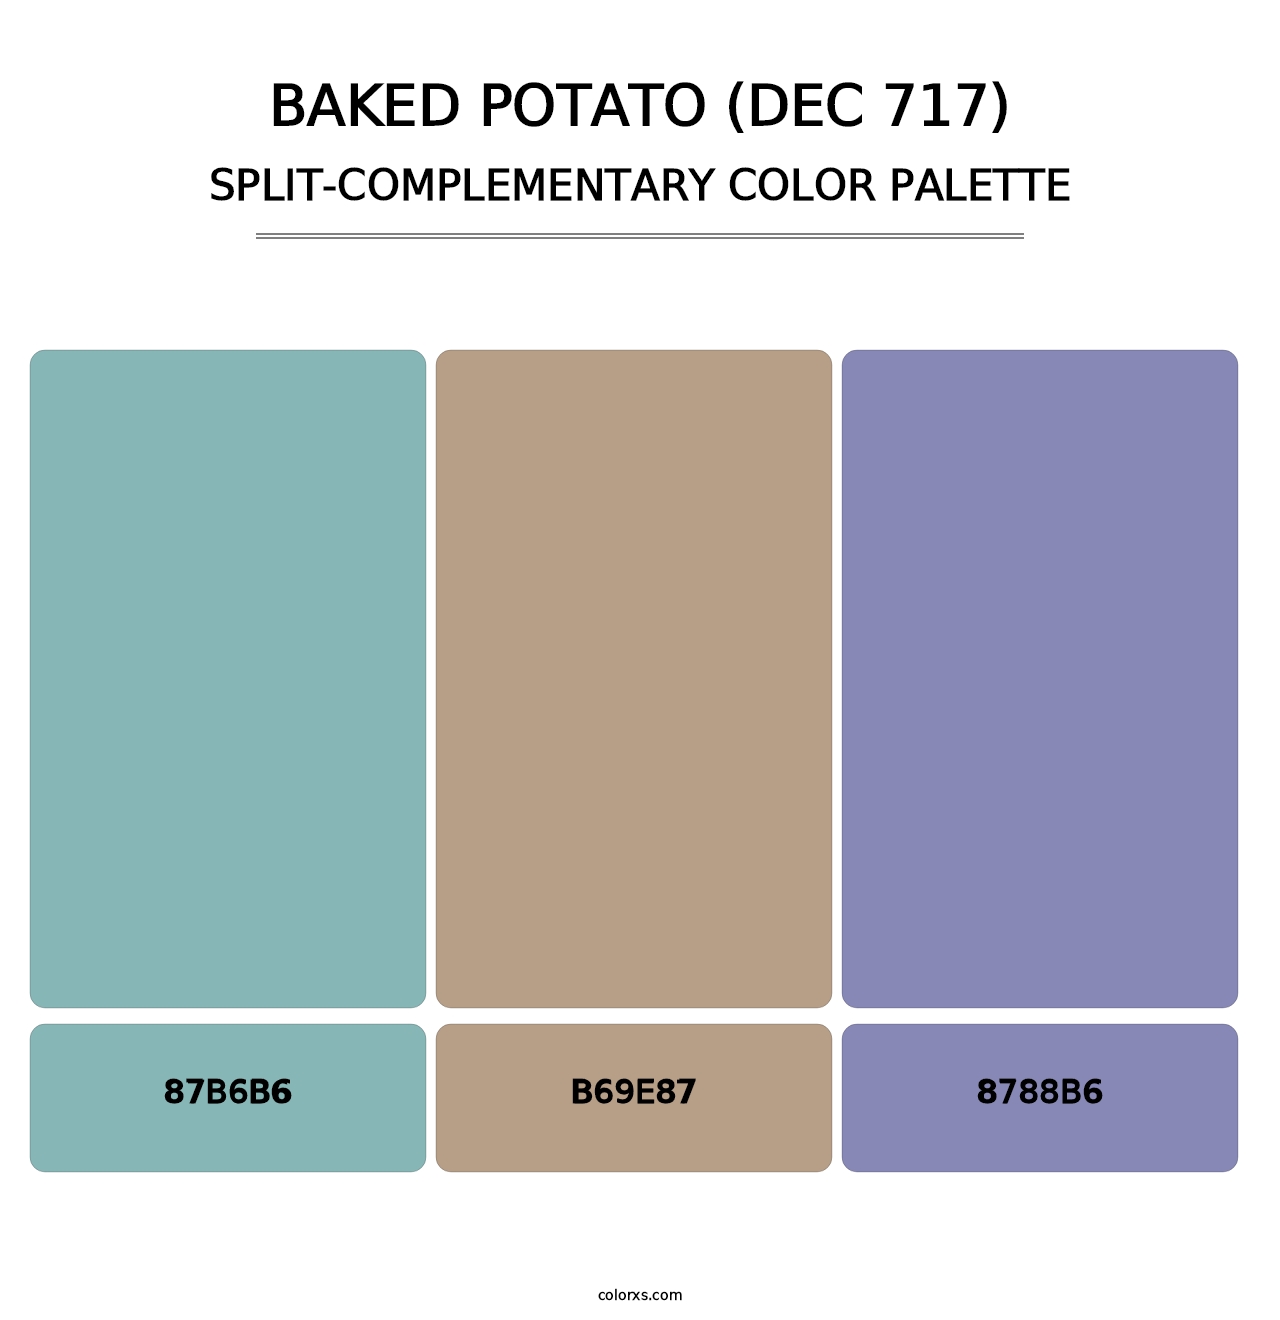 Baked Potato (DEC 717) - Split-Complementary Color Palette